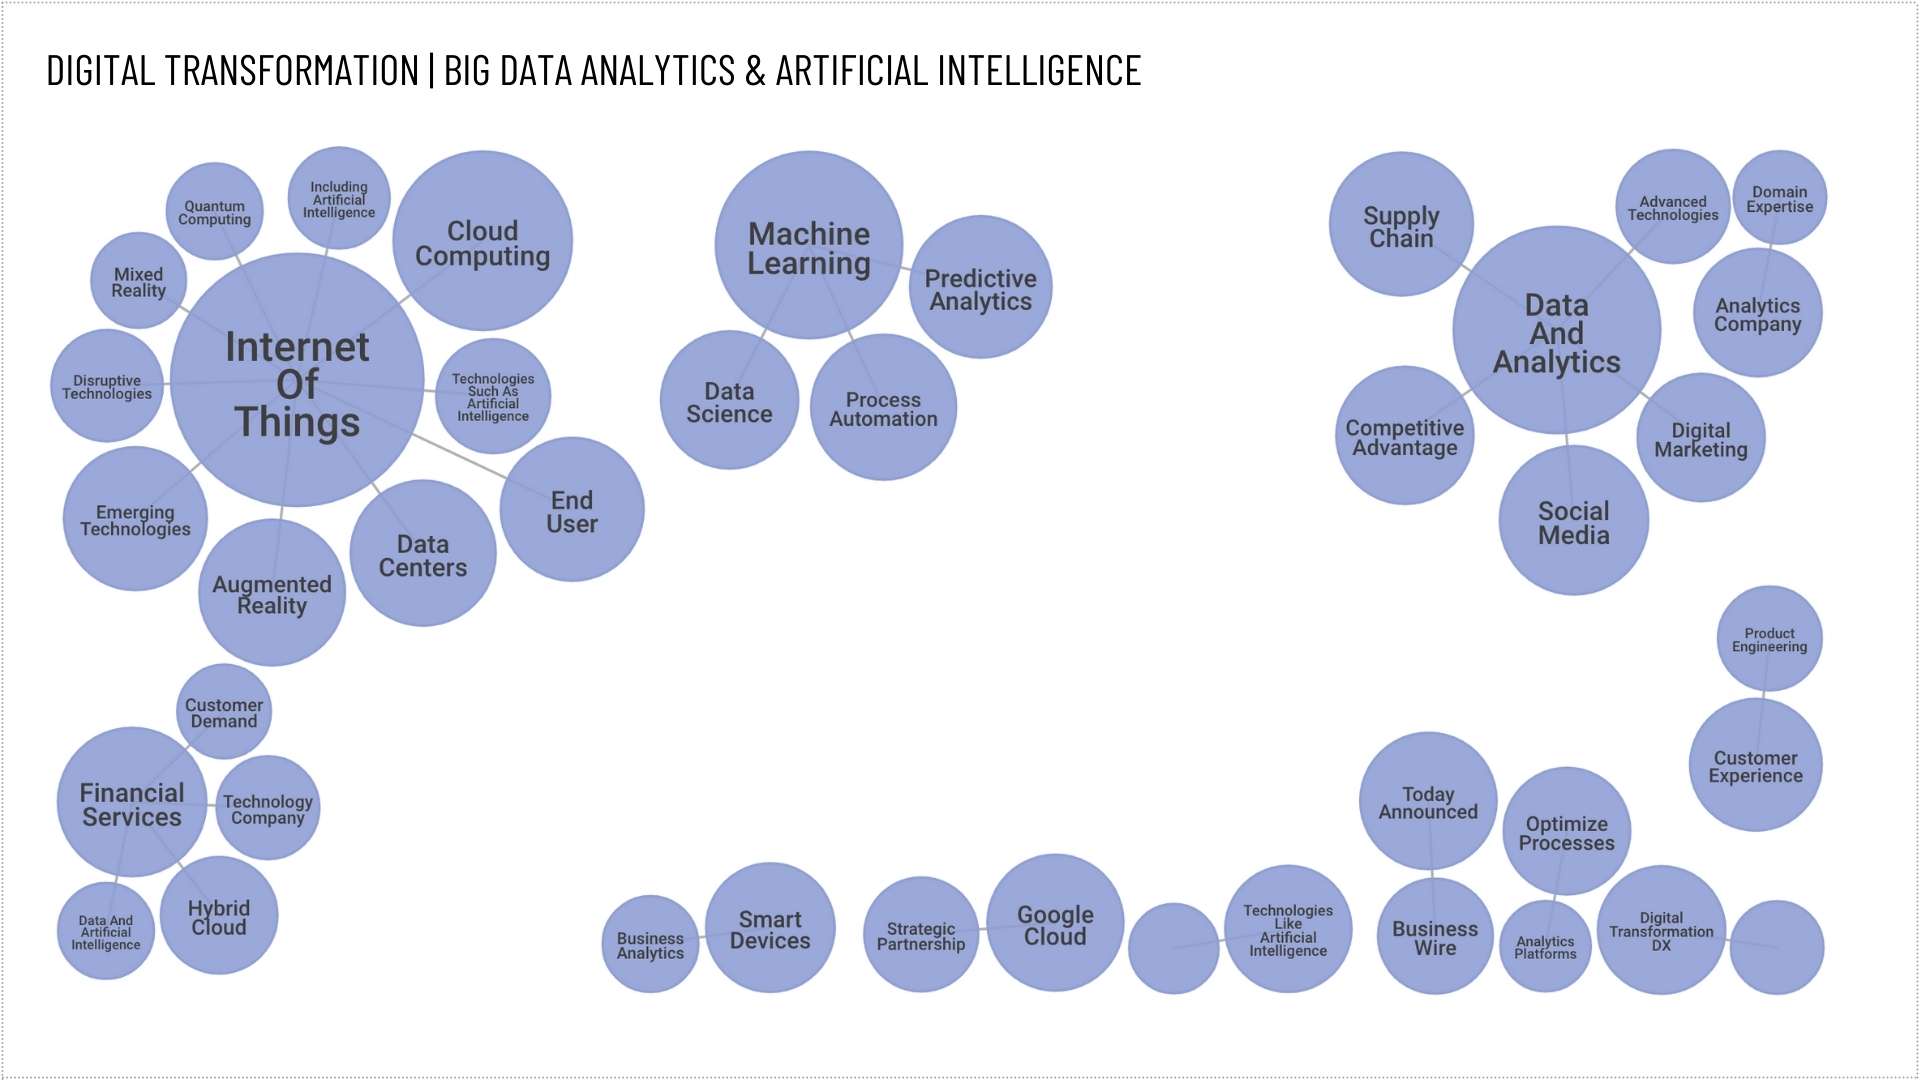 Big Data Analytics 